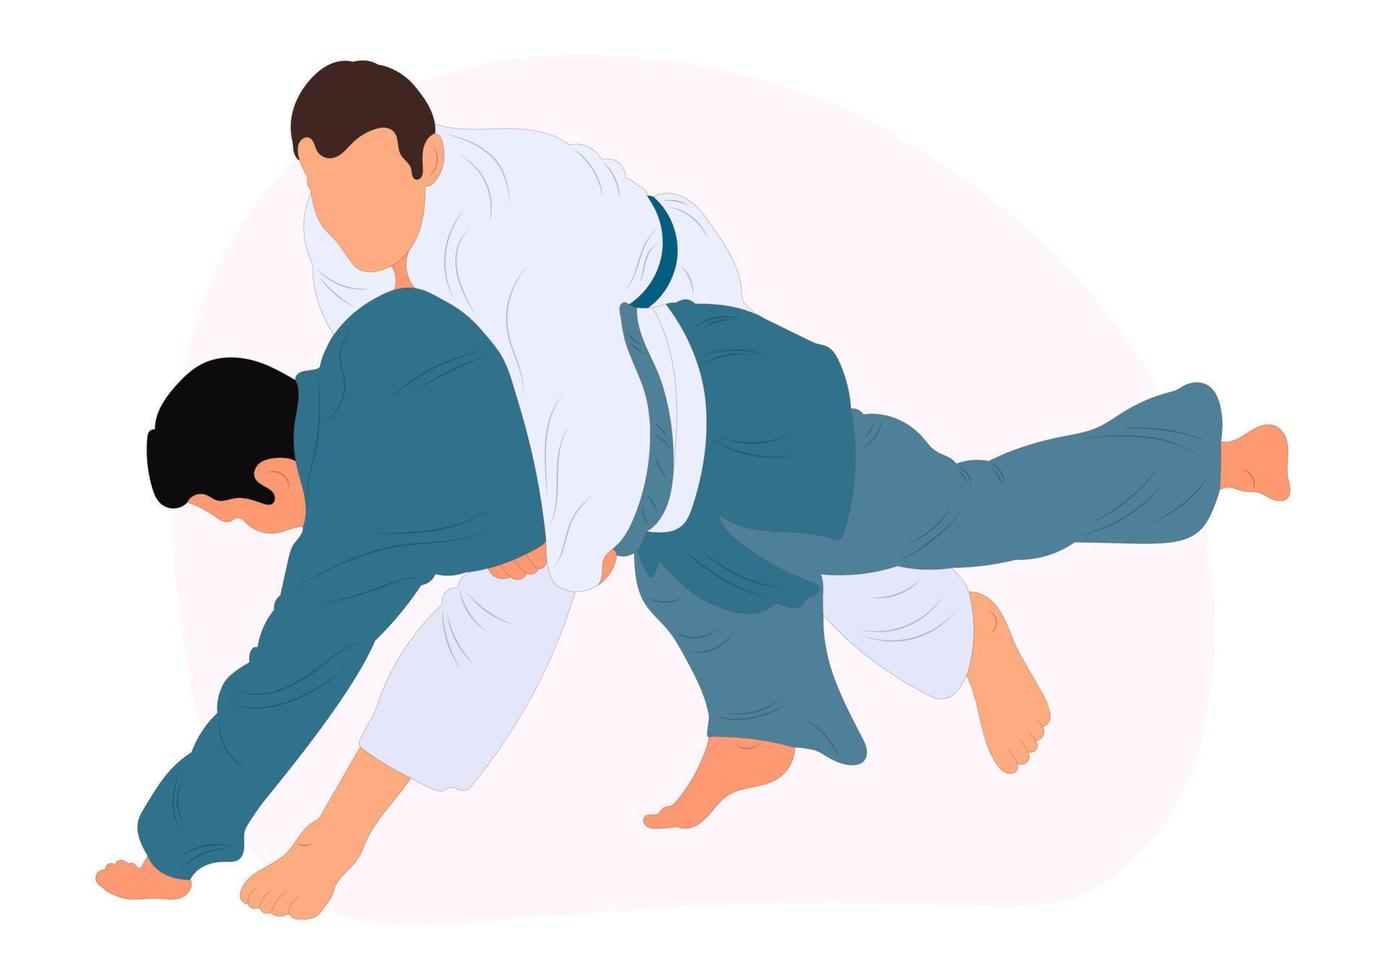 idrottare judoist, judoka, kämpe i en duell, bekämpa, match. judo sport, krigisk konst. platt stil. vektor